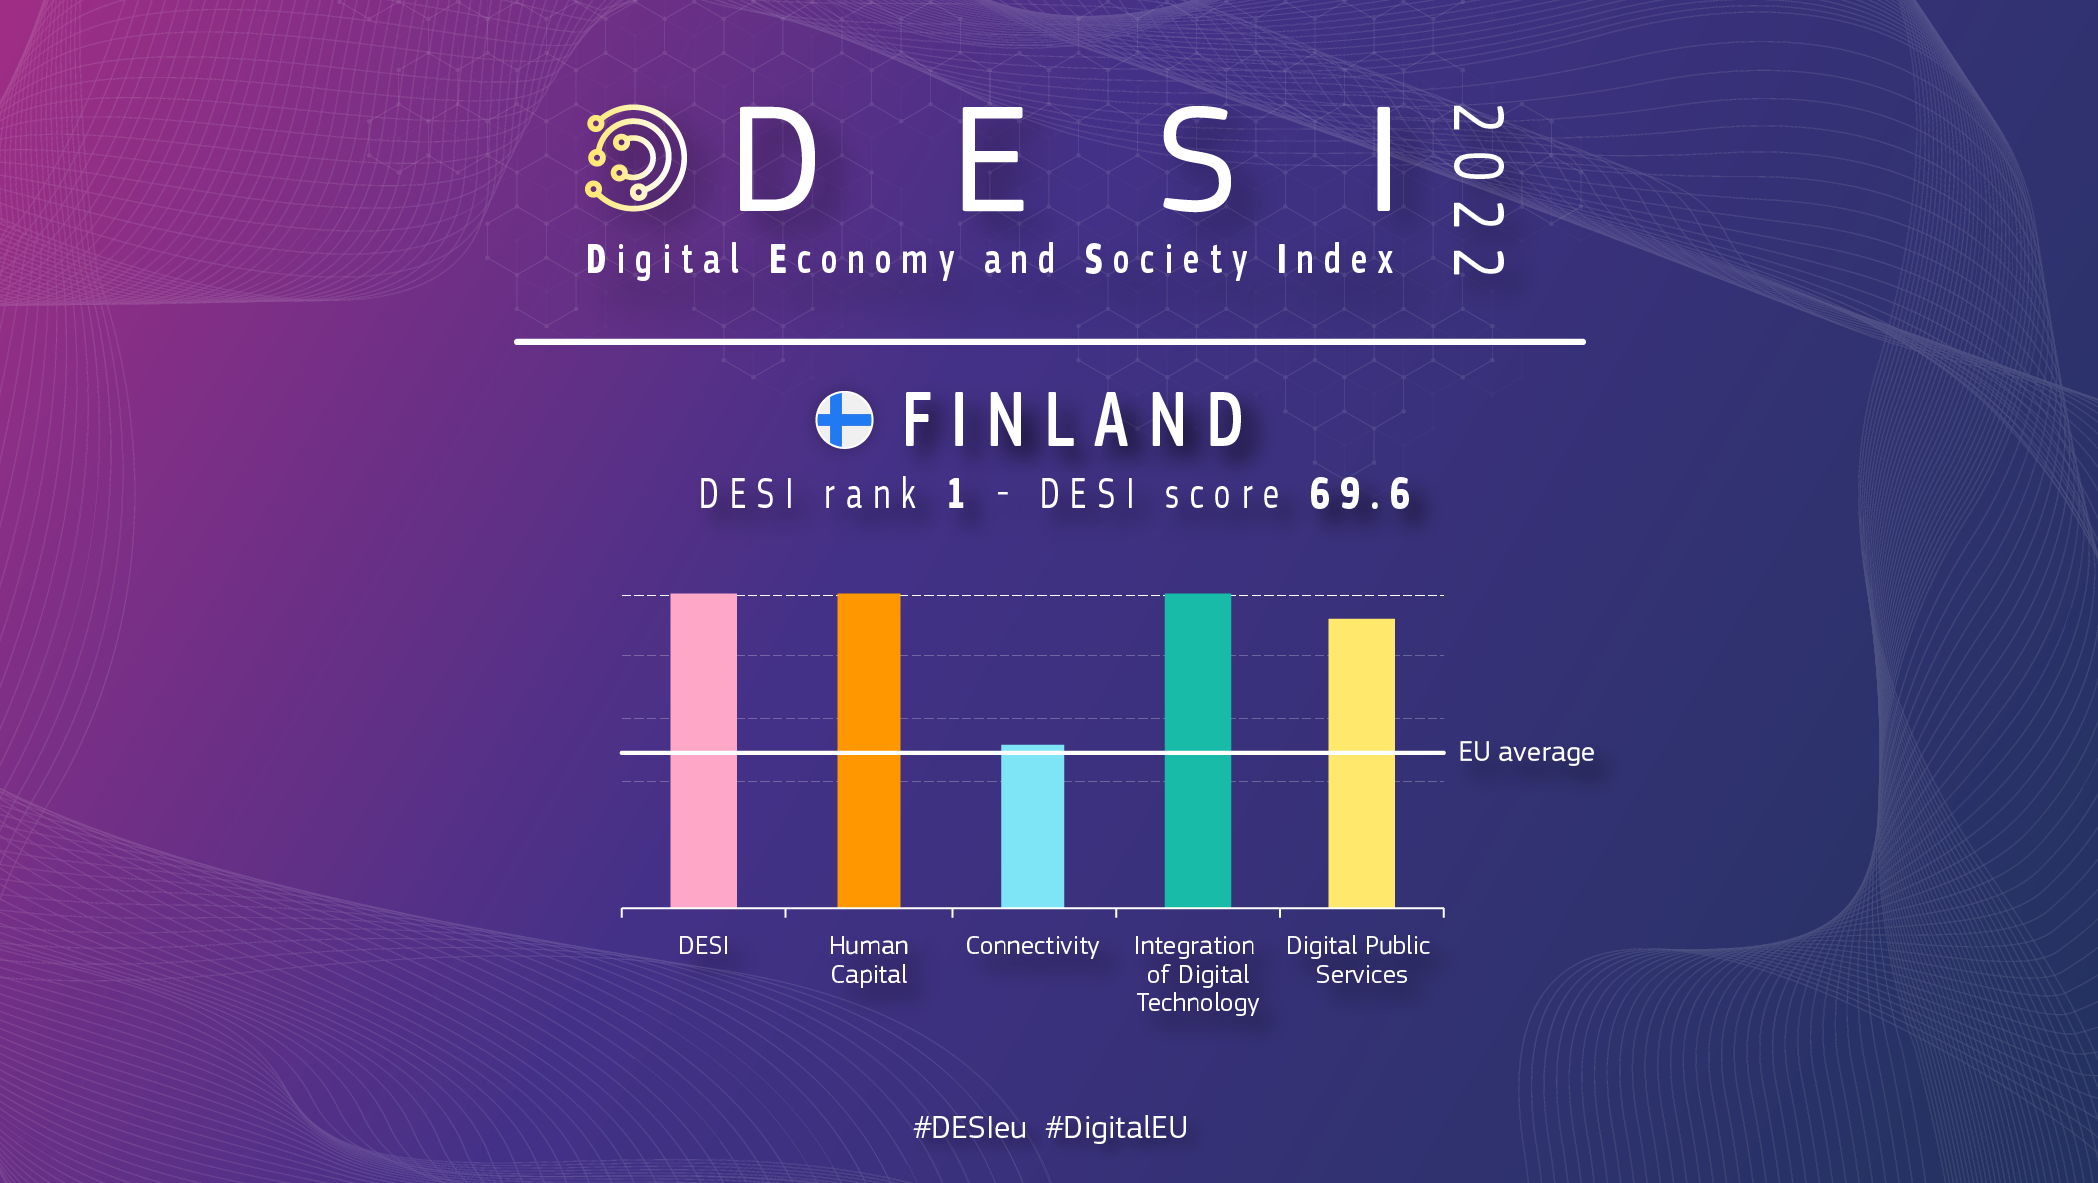 Grafisch overzicht van Finland in DESI met een ranking van 1 en een score van 69,6